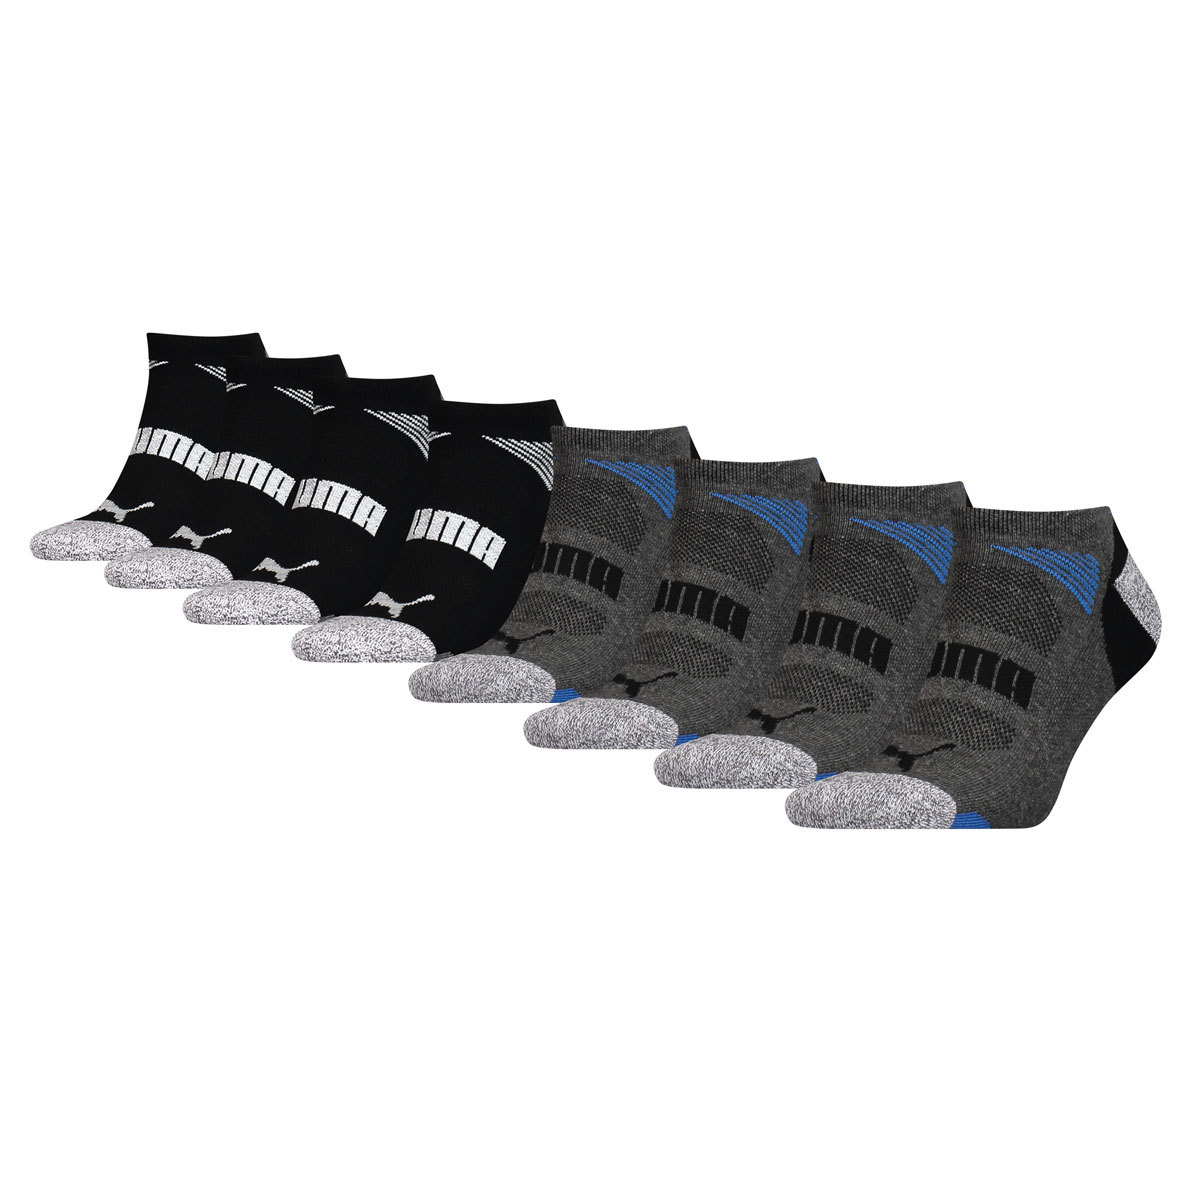 Socks, 8 Packs in Charcoal | Costco UK